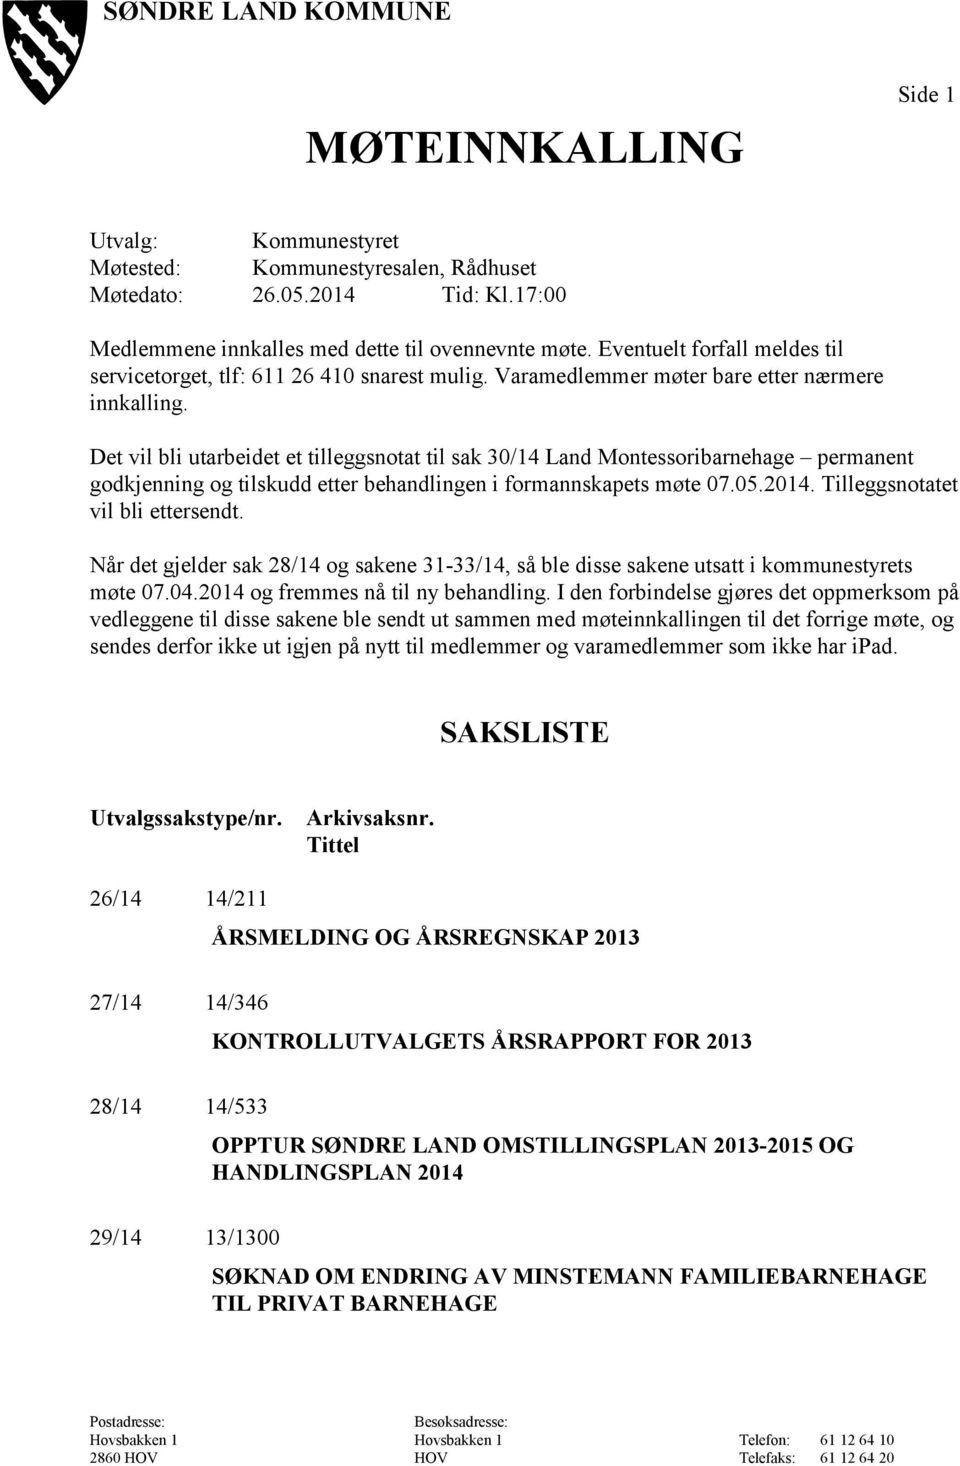 Det vil bli utarbeidet et tilleggsnotat til sak 30/14 Land Montessoribarnehage permanent godkjenning og tilskudd etter behandlingen i formannskapets møte 07.05.2014.